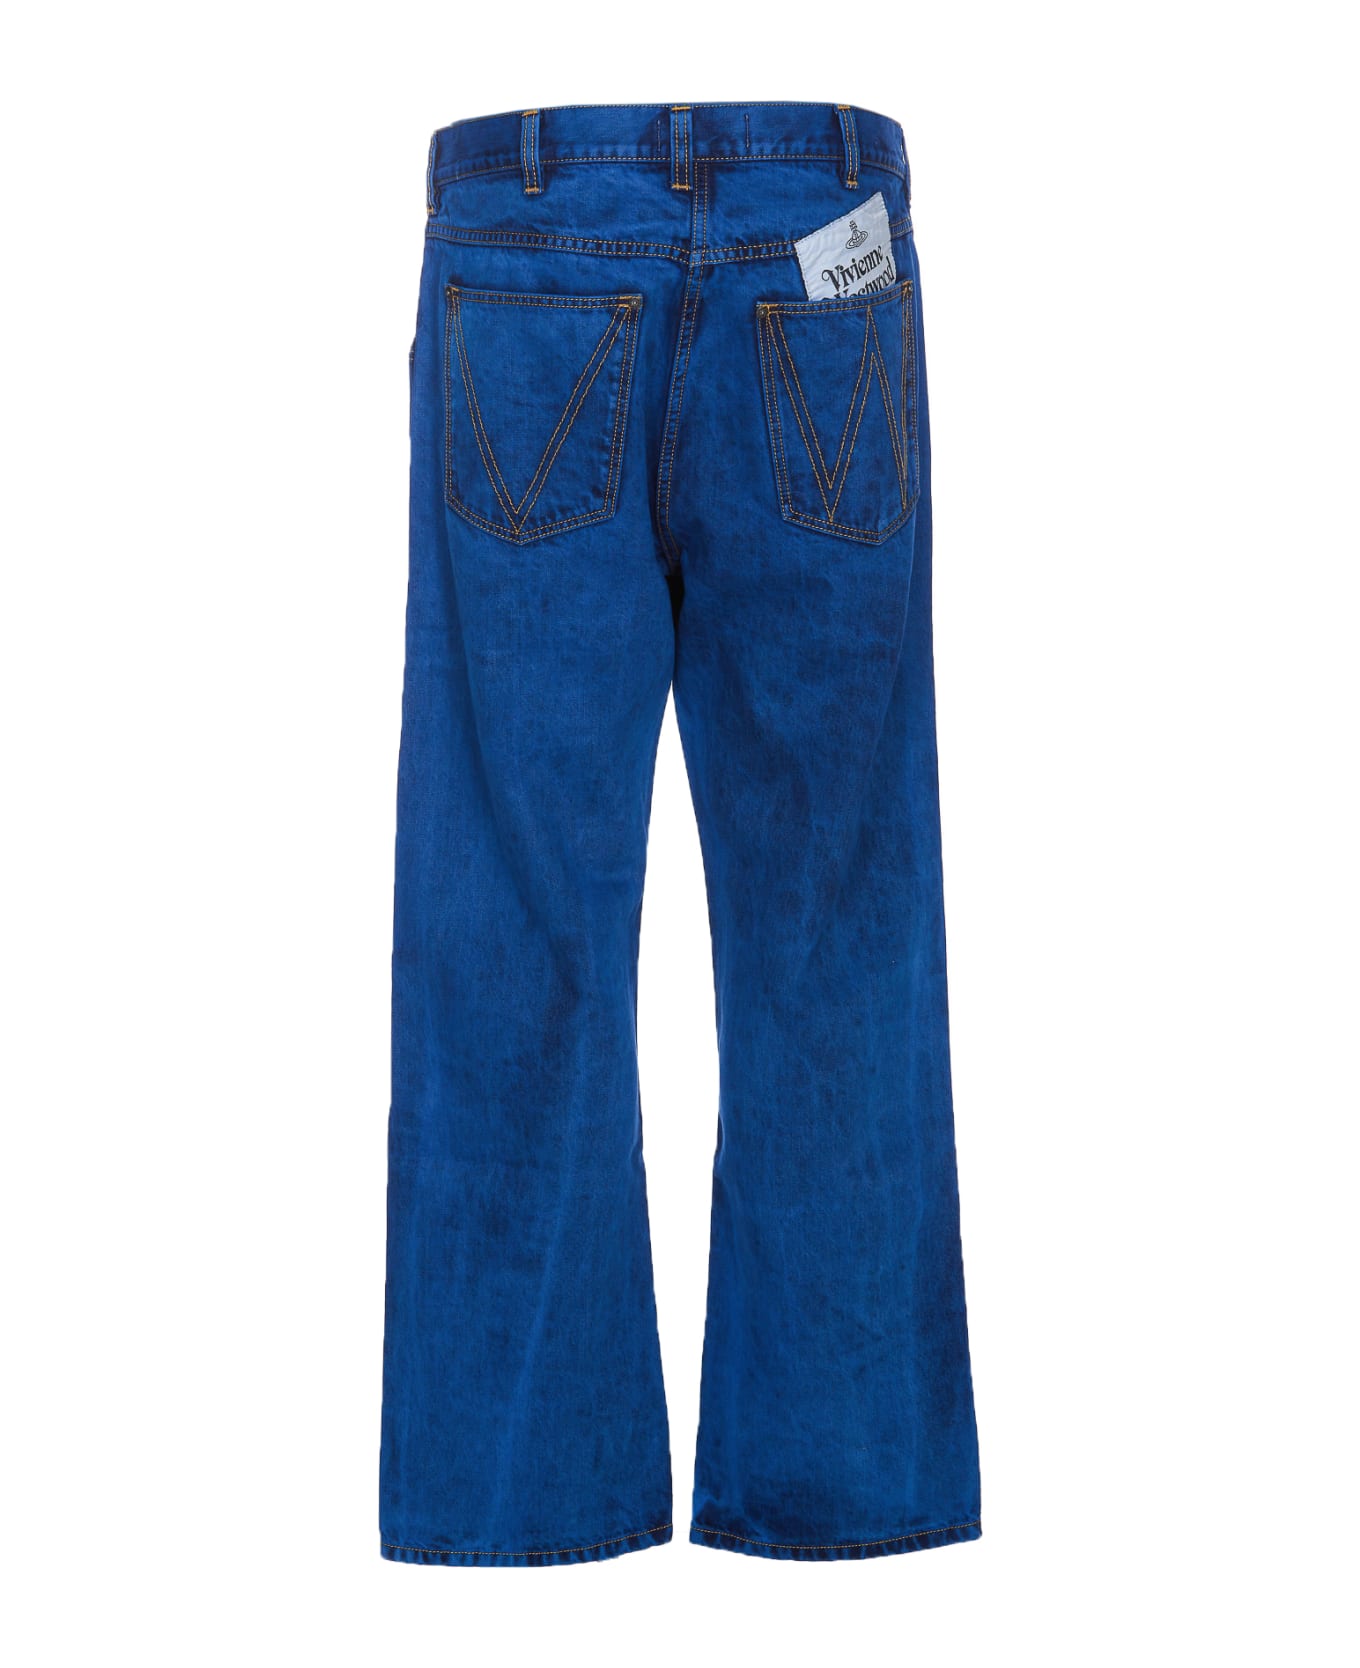 Vivienne Westwood Ranch Jeans - Blue